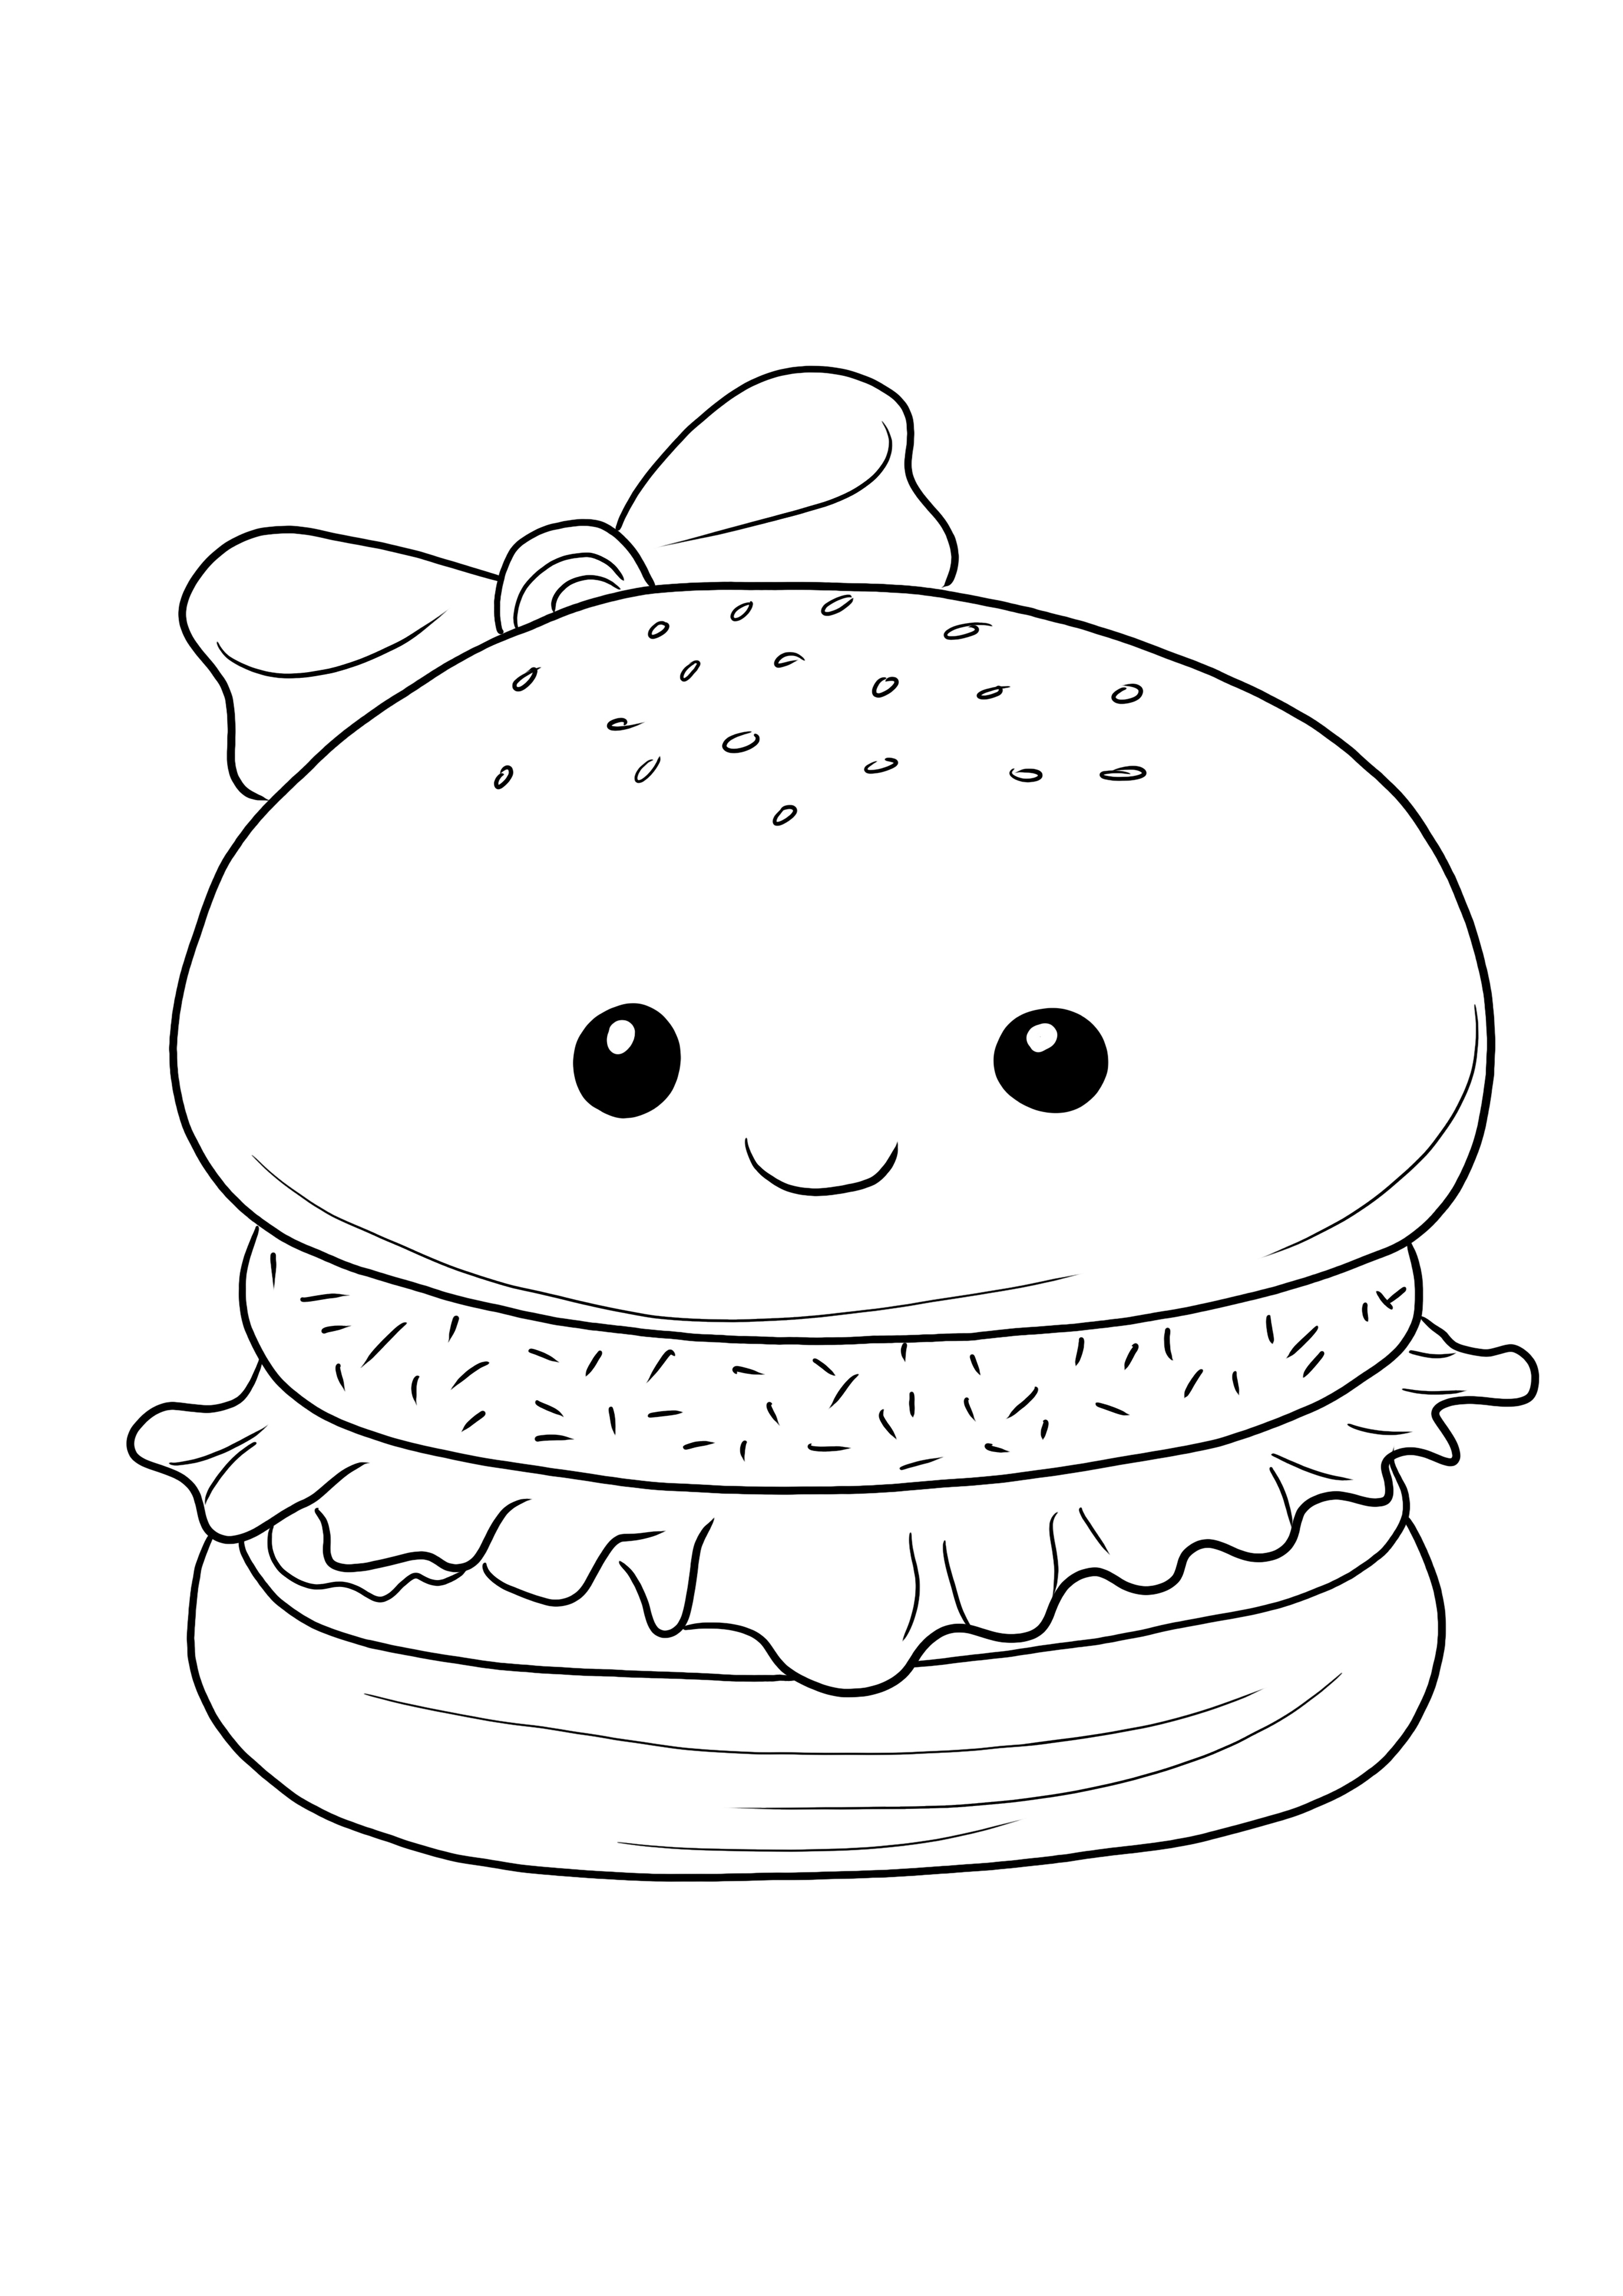 Bezpłatny, gotowy do pokolorowania hamburger dla dzieci do nauki przez zabawę